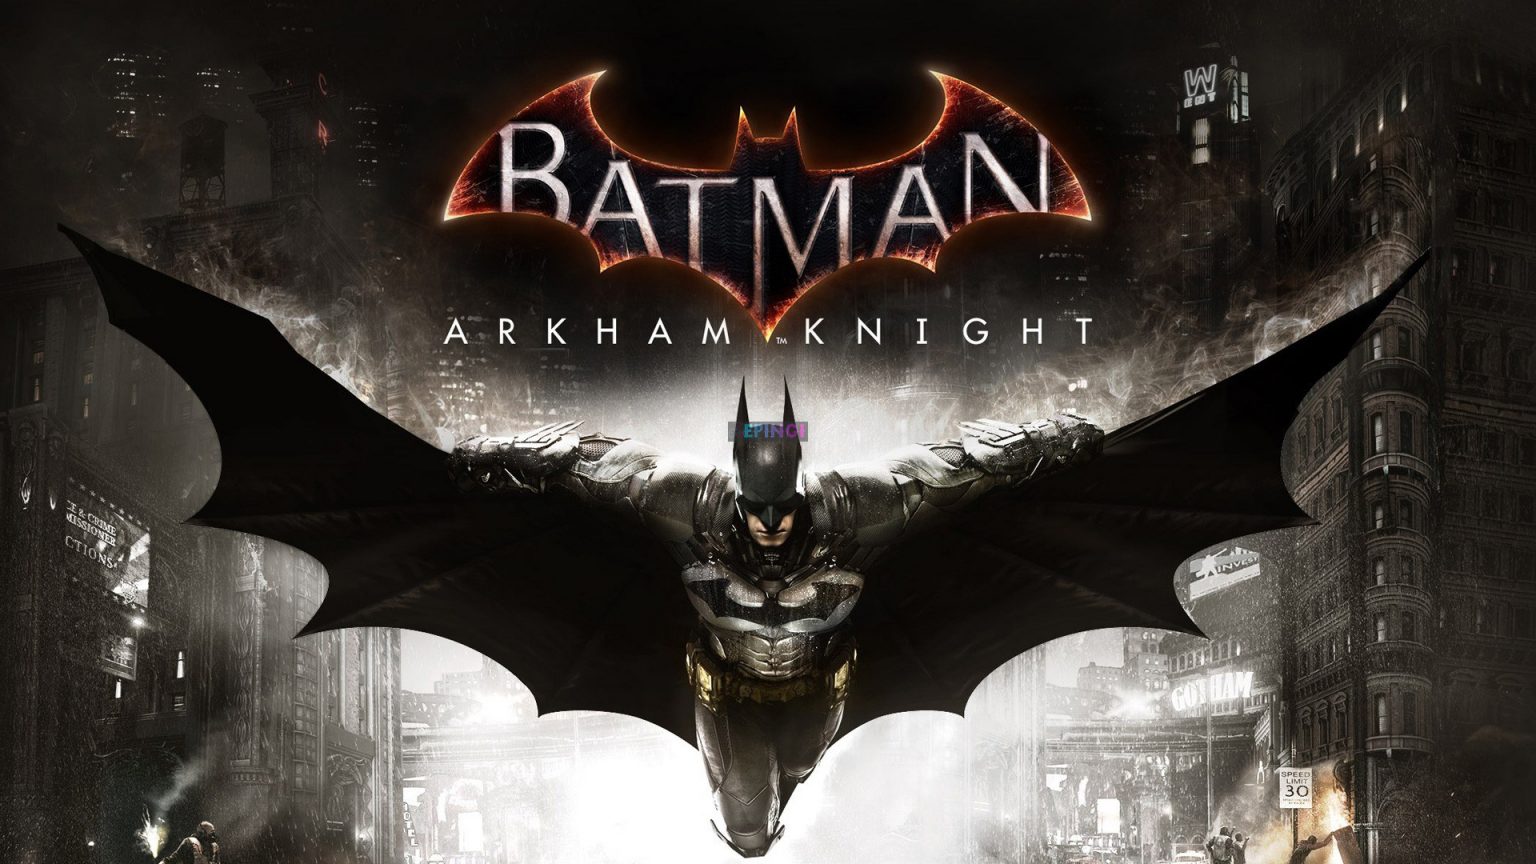 Batman Arkham Knight PC Full Version Free Download 1536x864 1